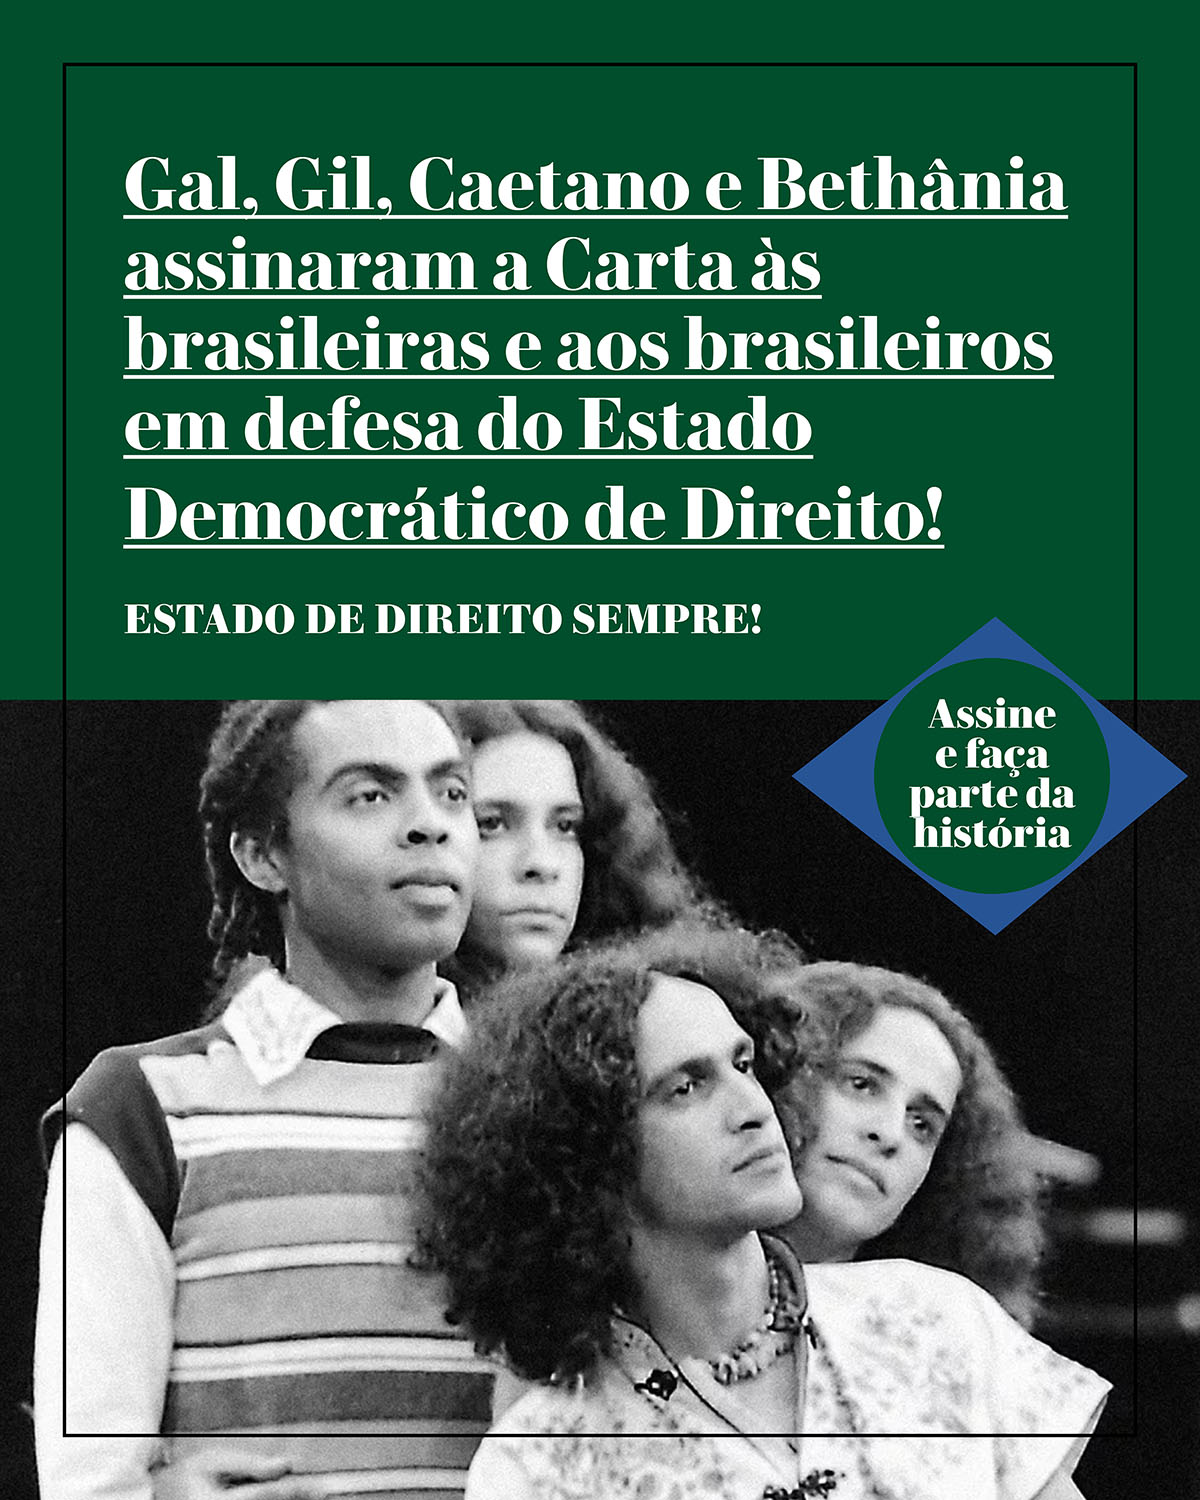 Gal, Gil, Caetano e Bethânia assinaram a Carta às brasileiras e aos brasileiros em defesa do Estado Democrático de Direito!